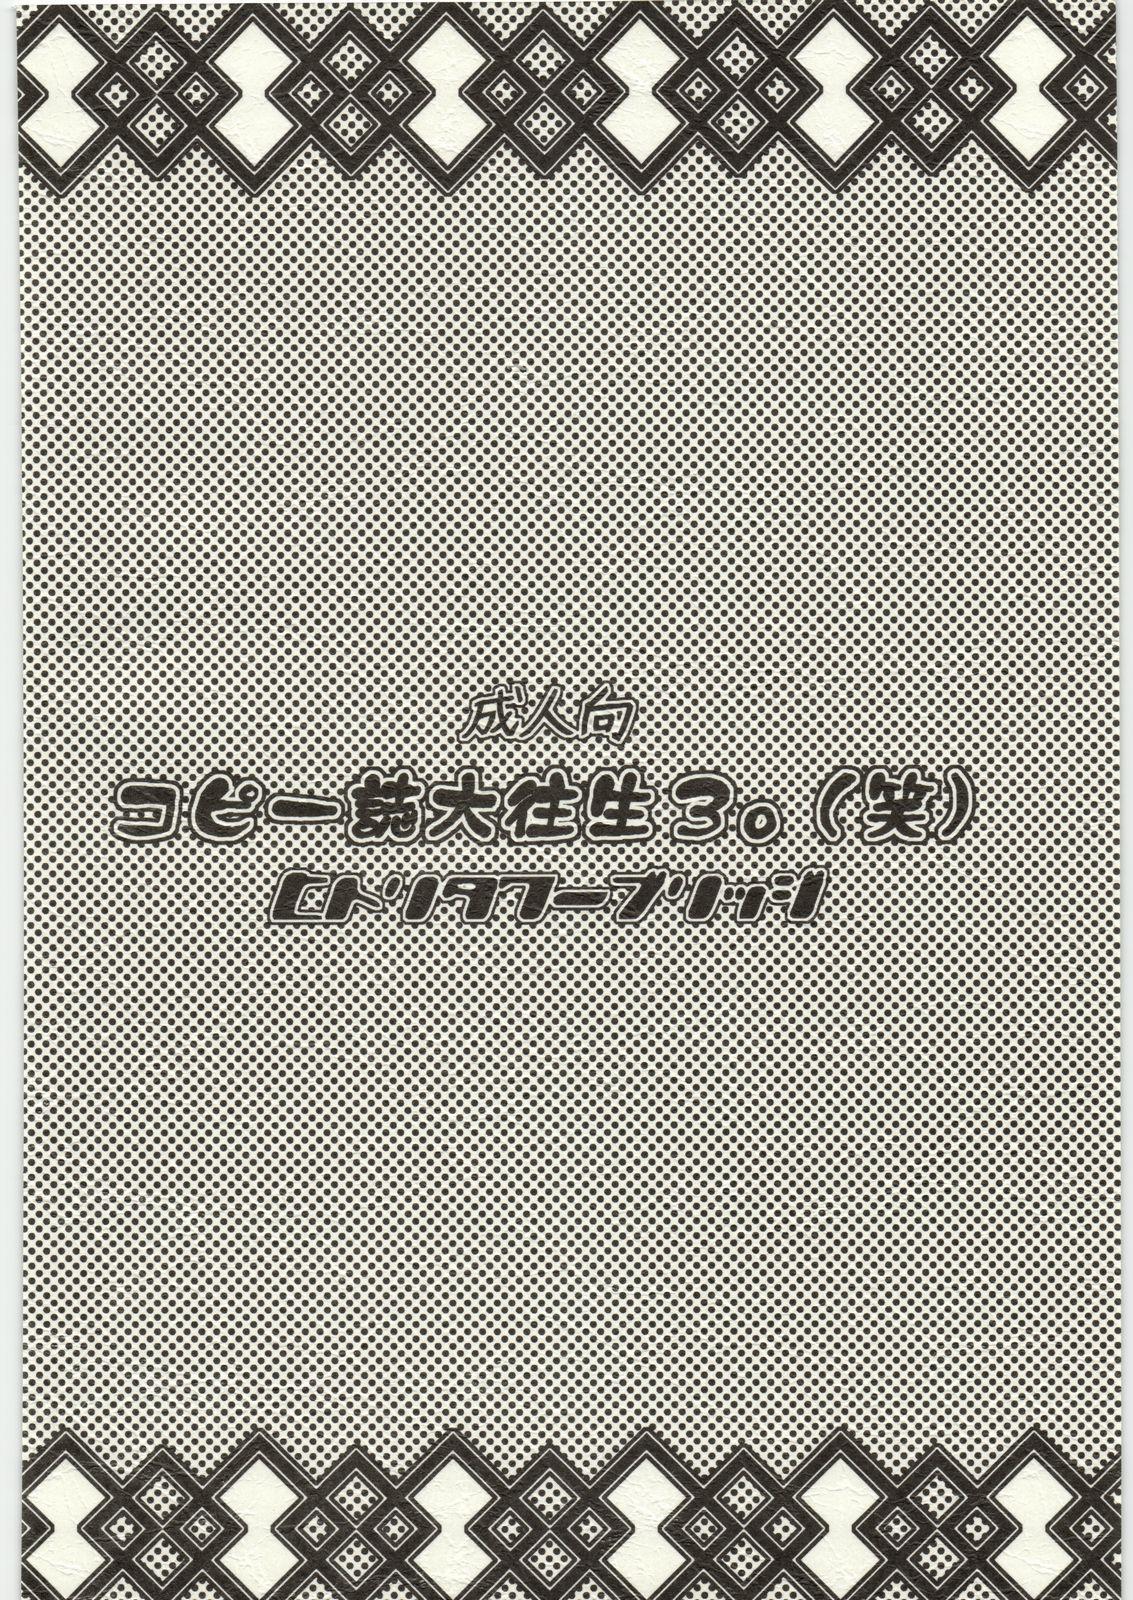 Copy Shi Daioujou 3. 25